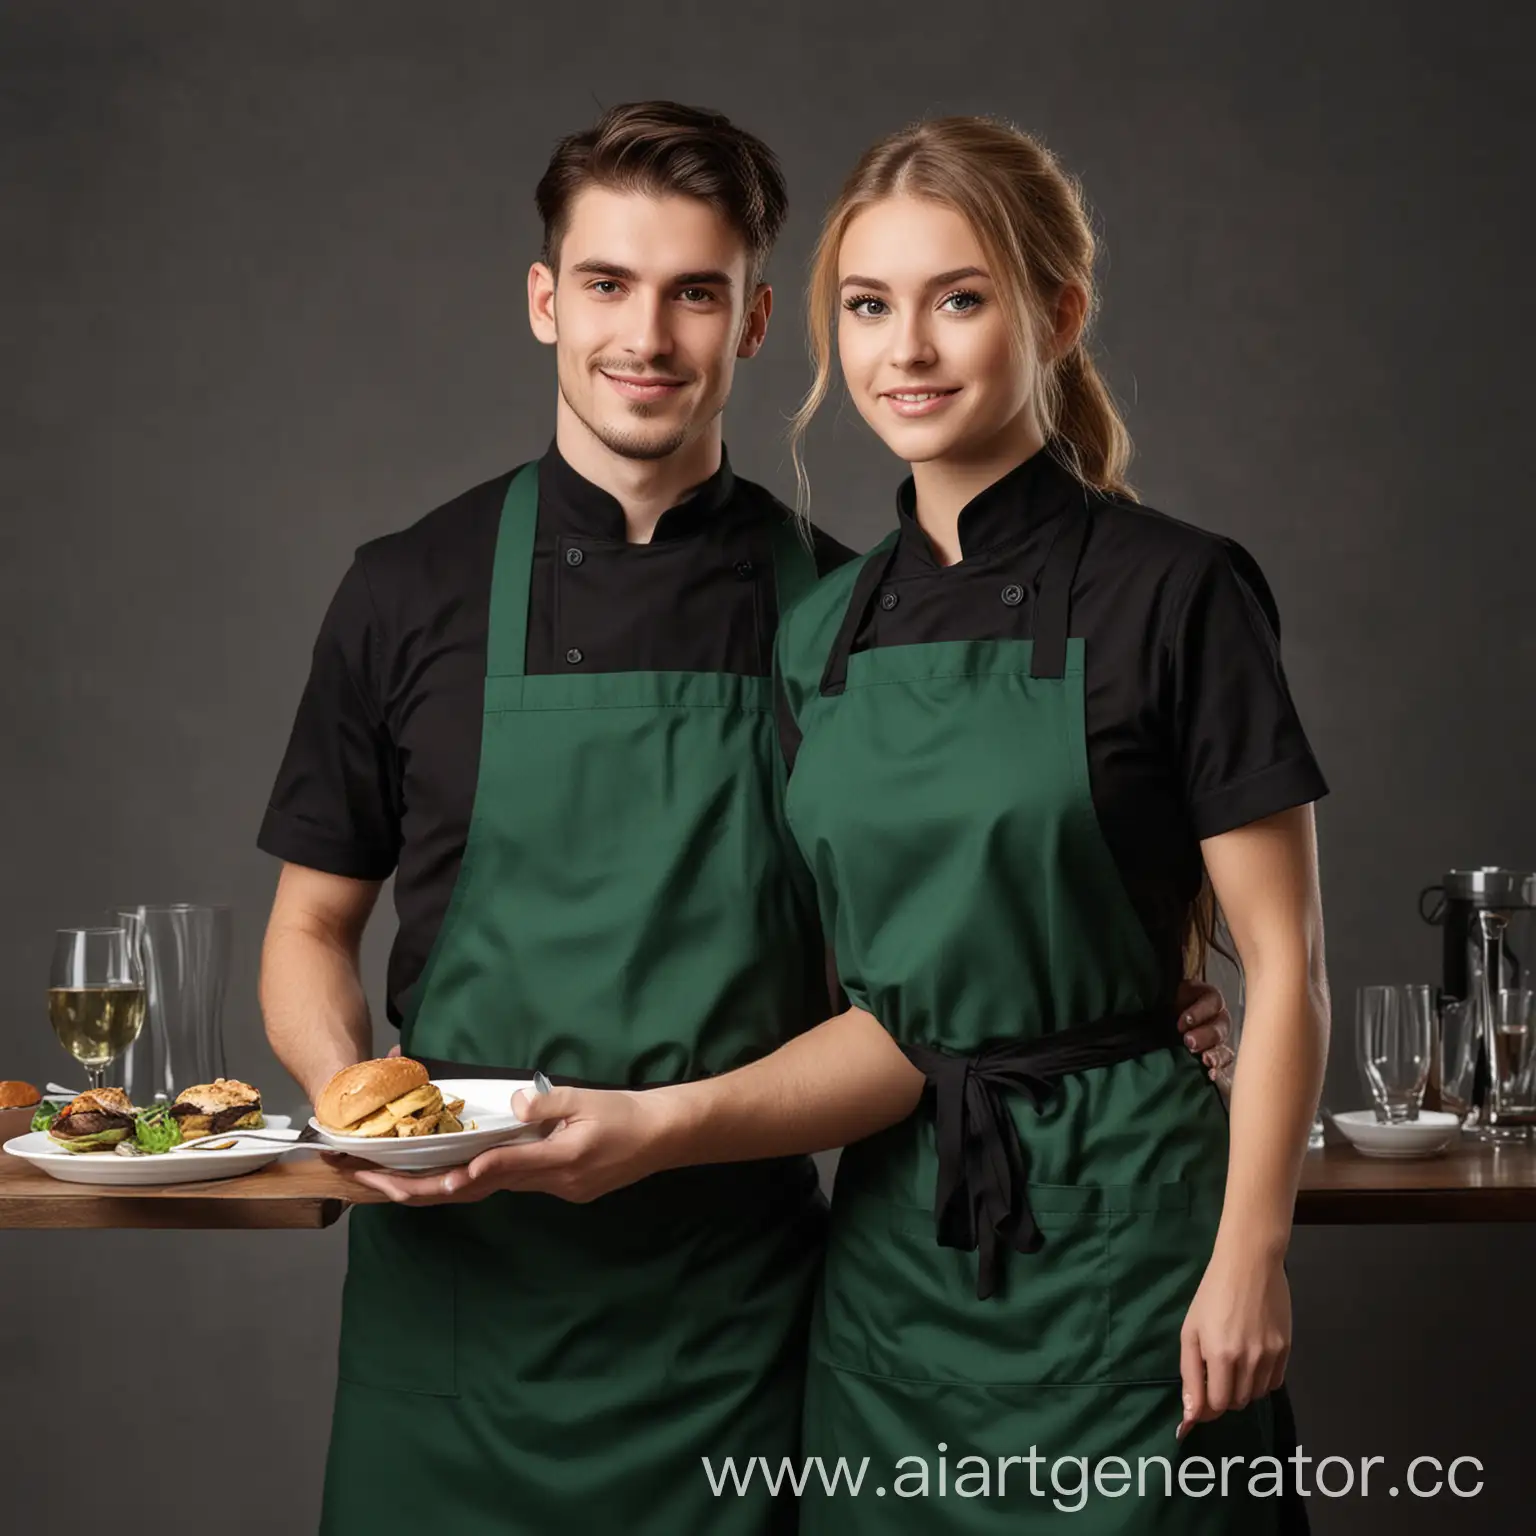 Официант и официантка в тёмно-зелёной униформе и чёрным фартуком